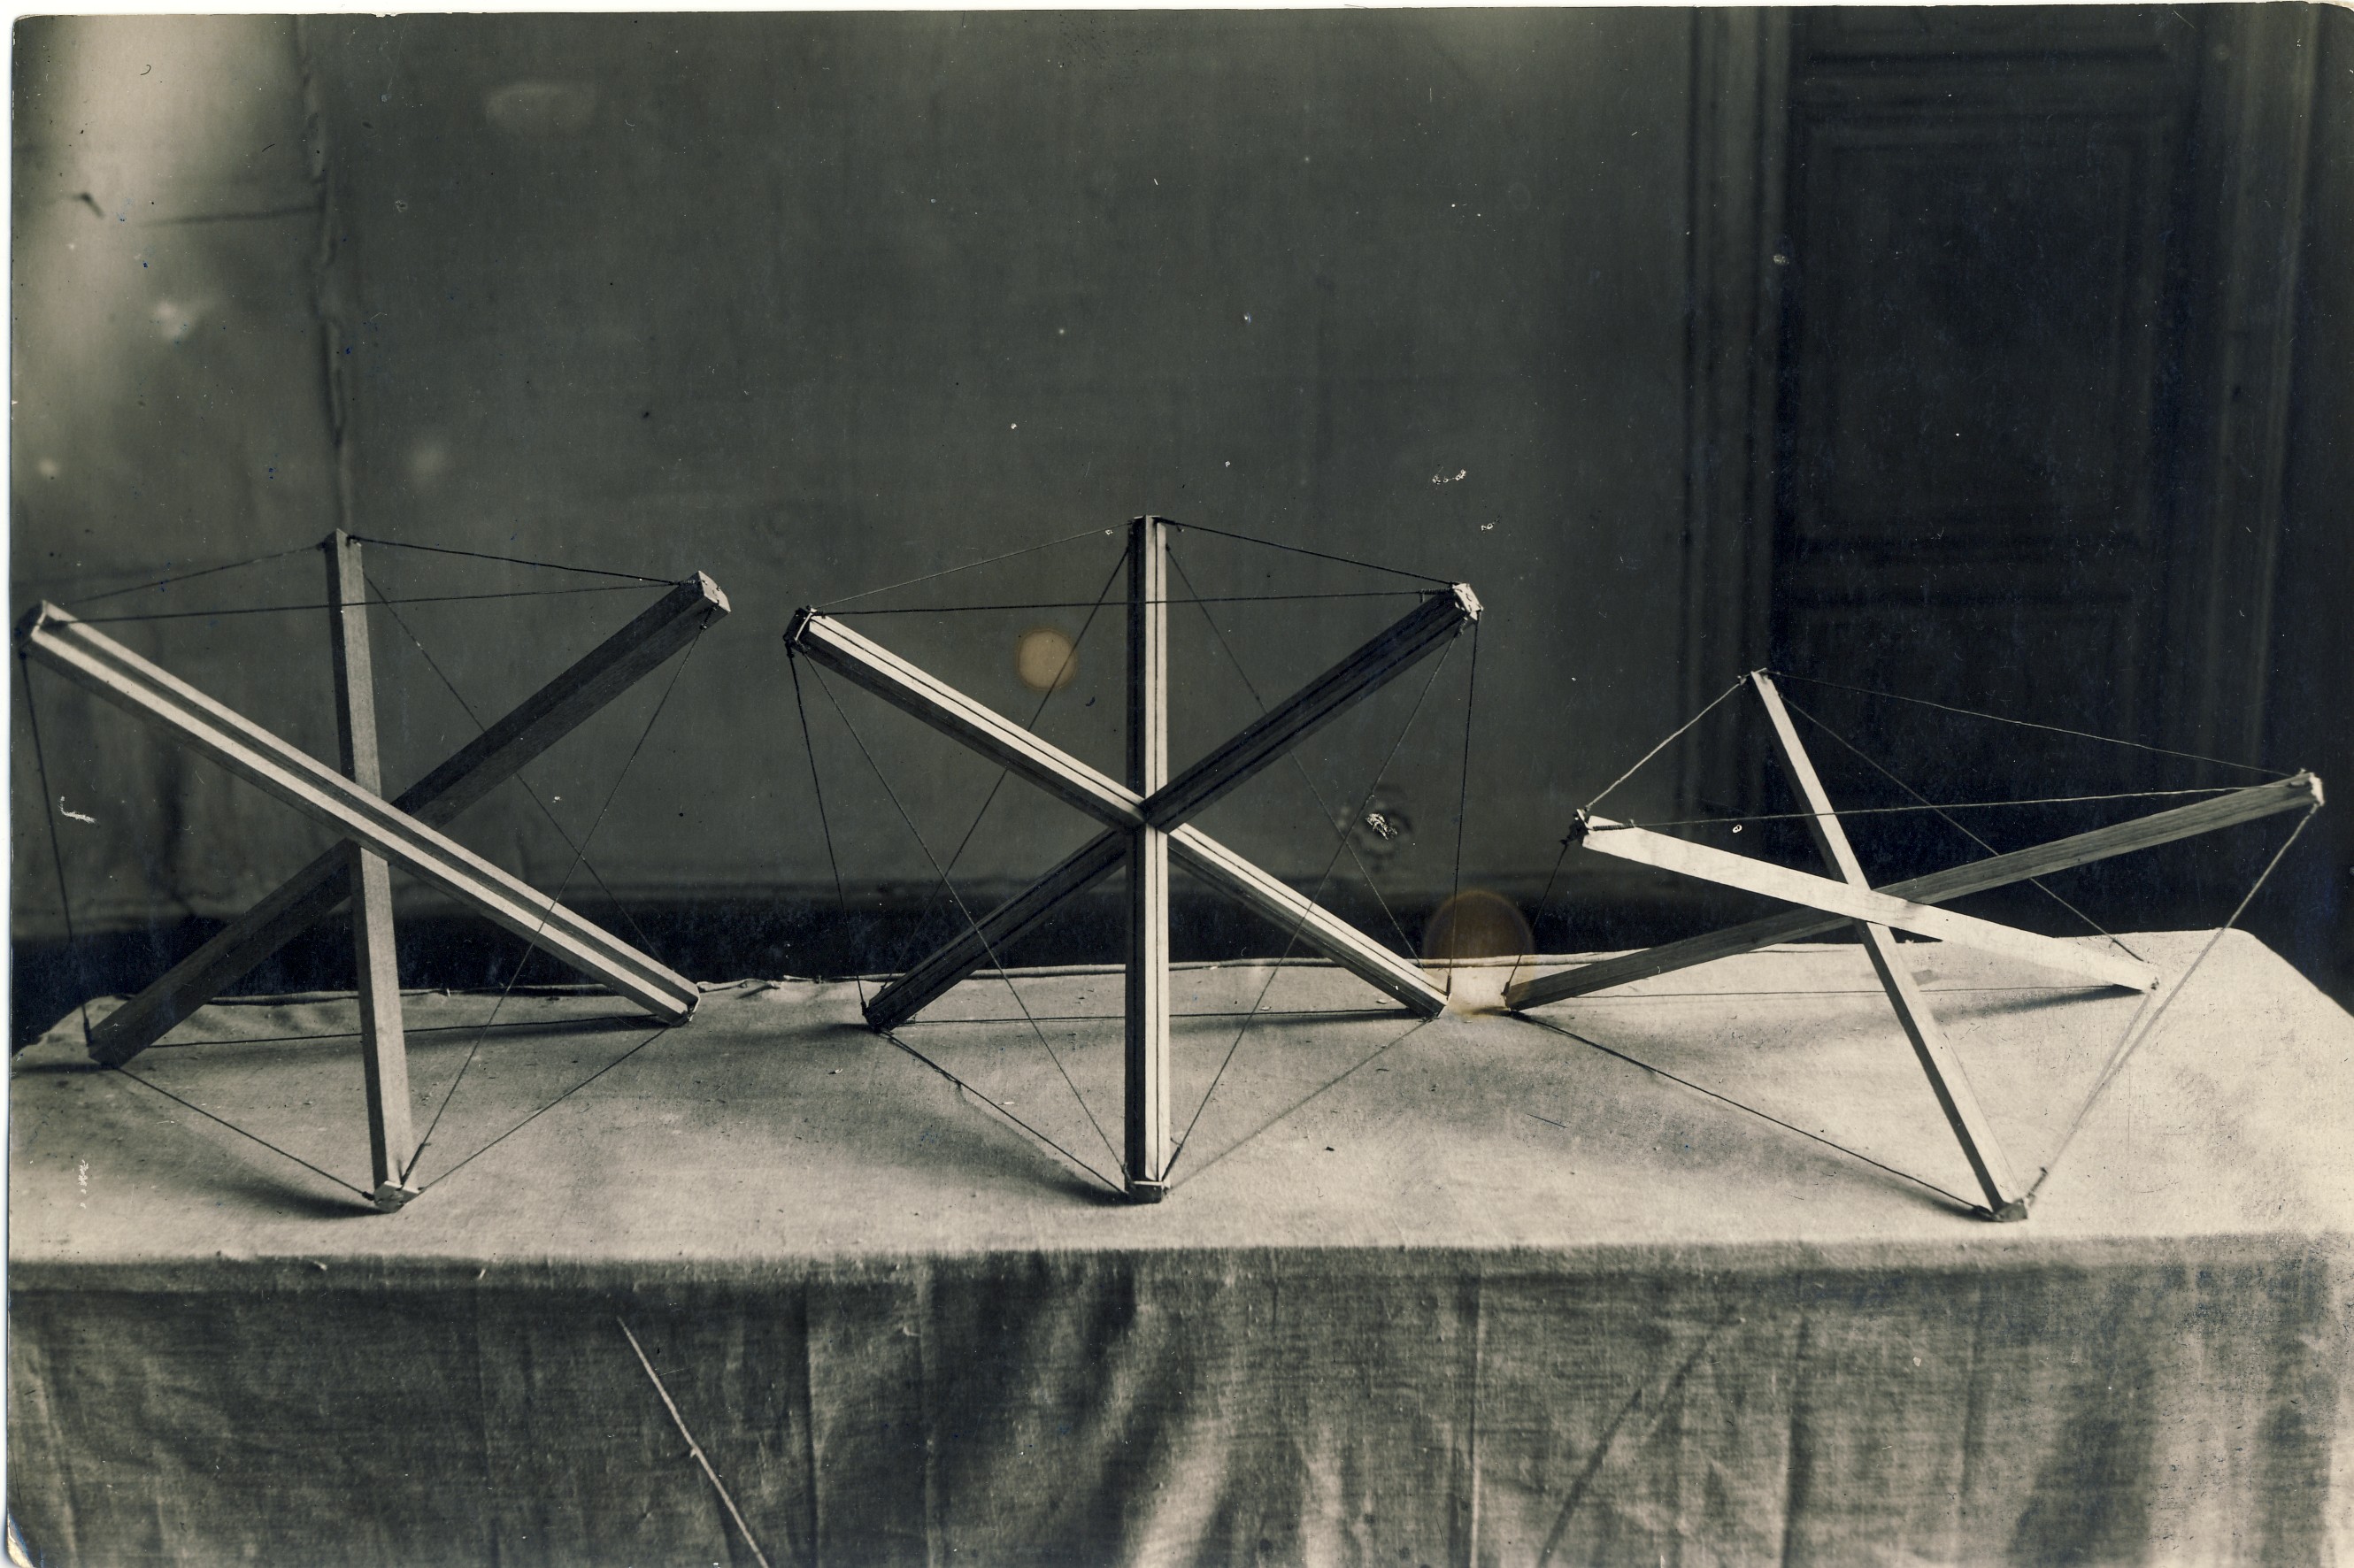 Karlis johansons három konstrukció 1921 fotográfia. magángyűjtemény